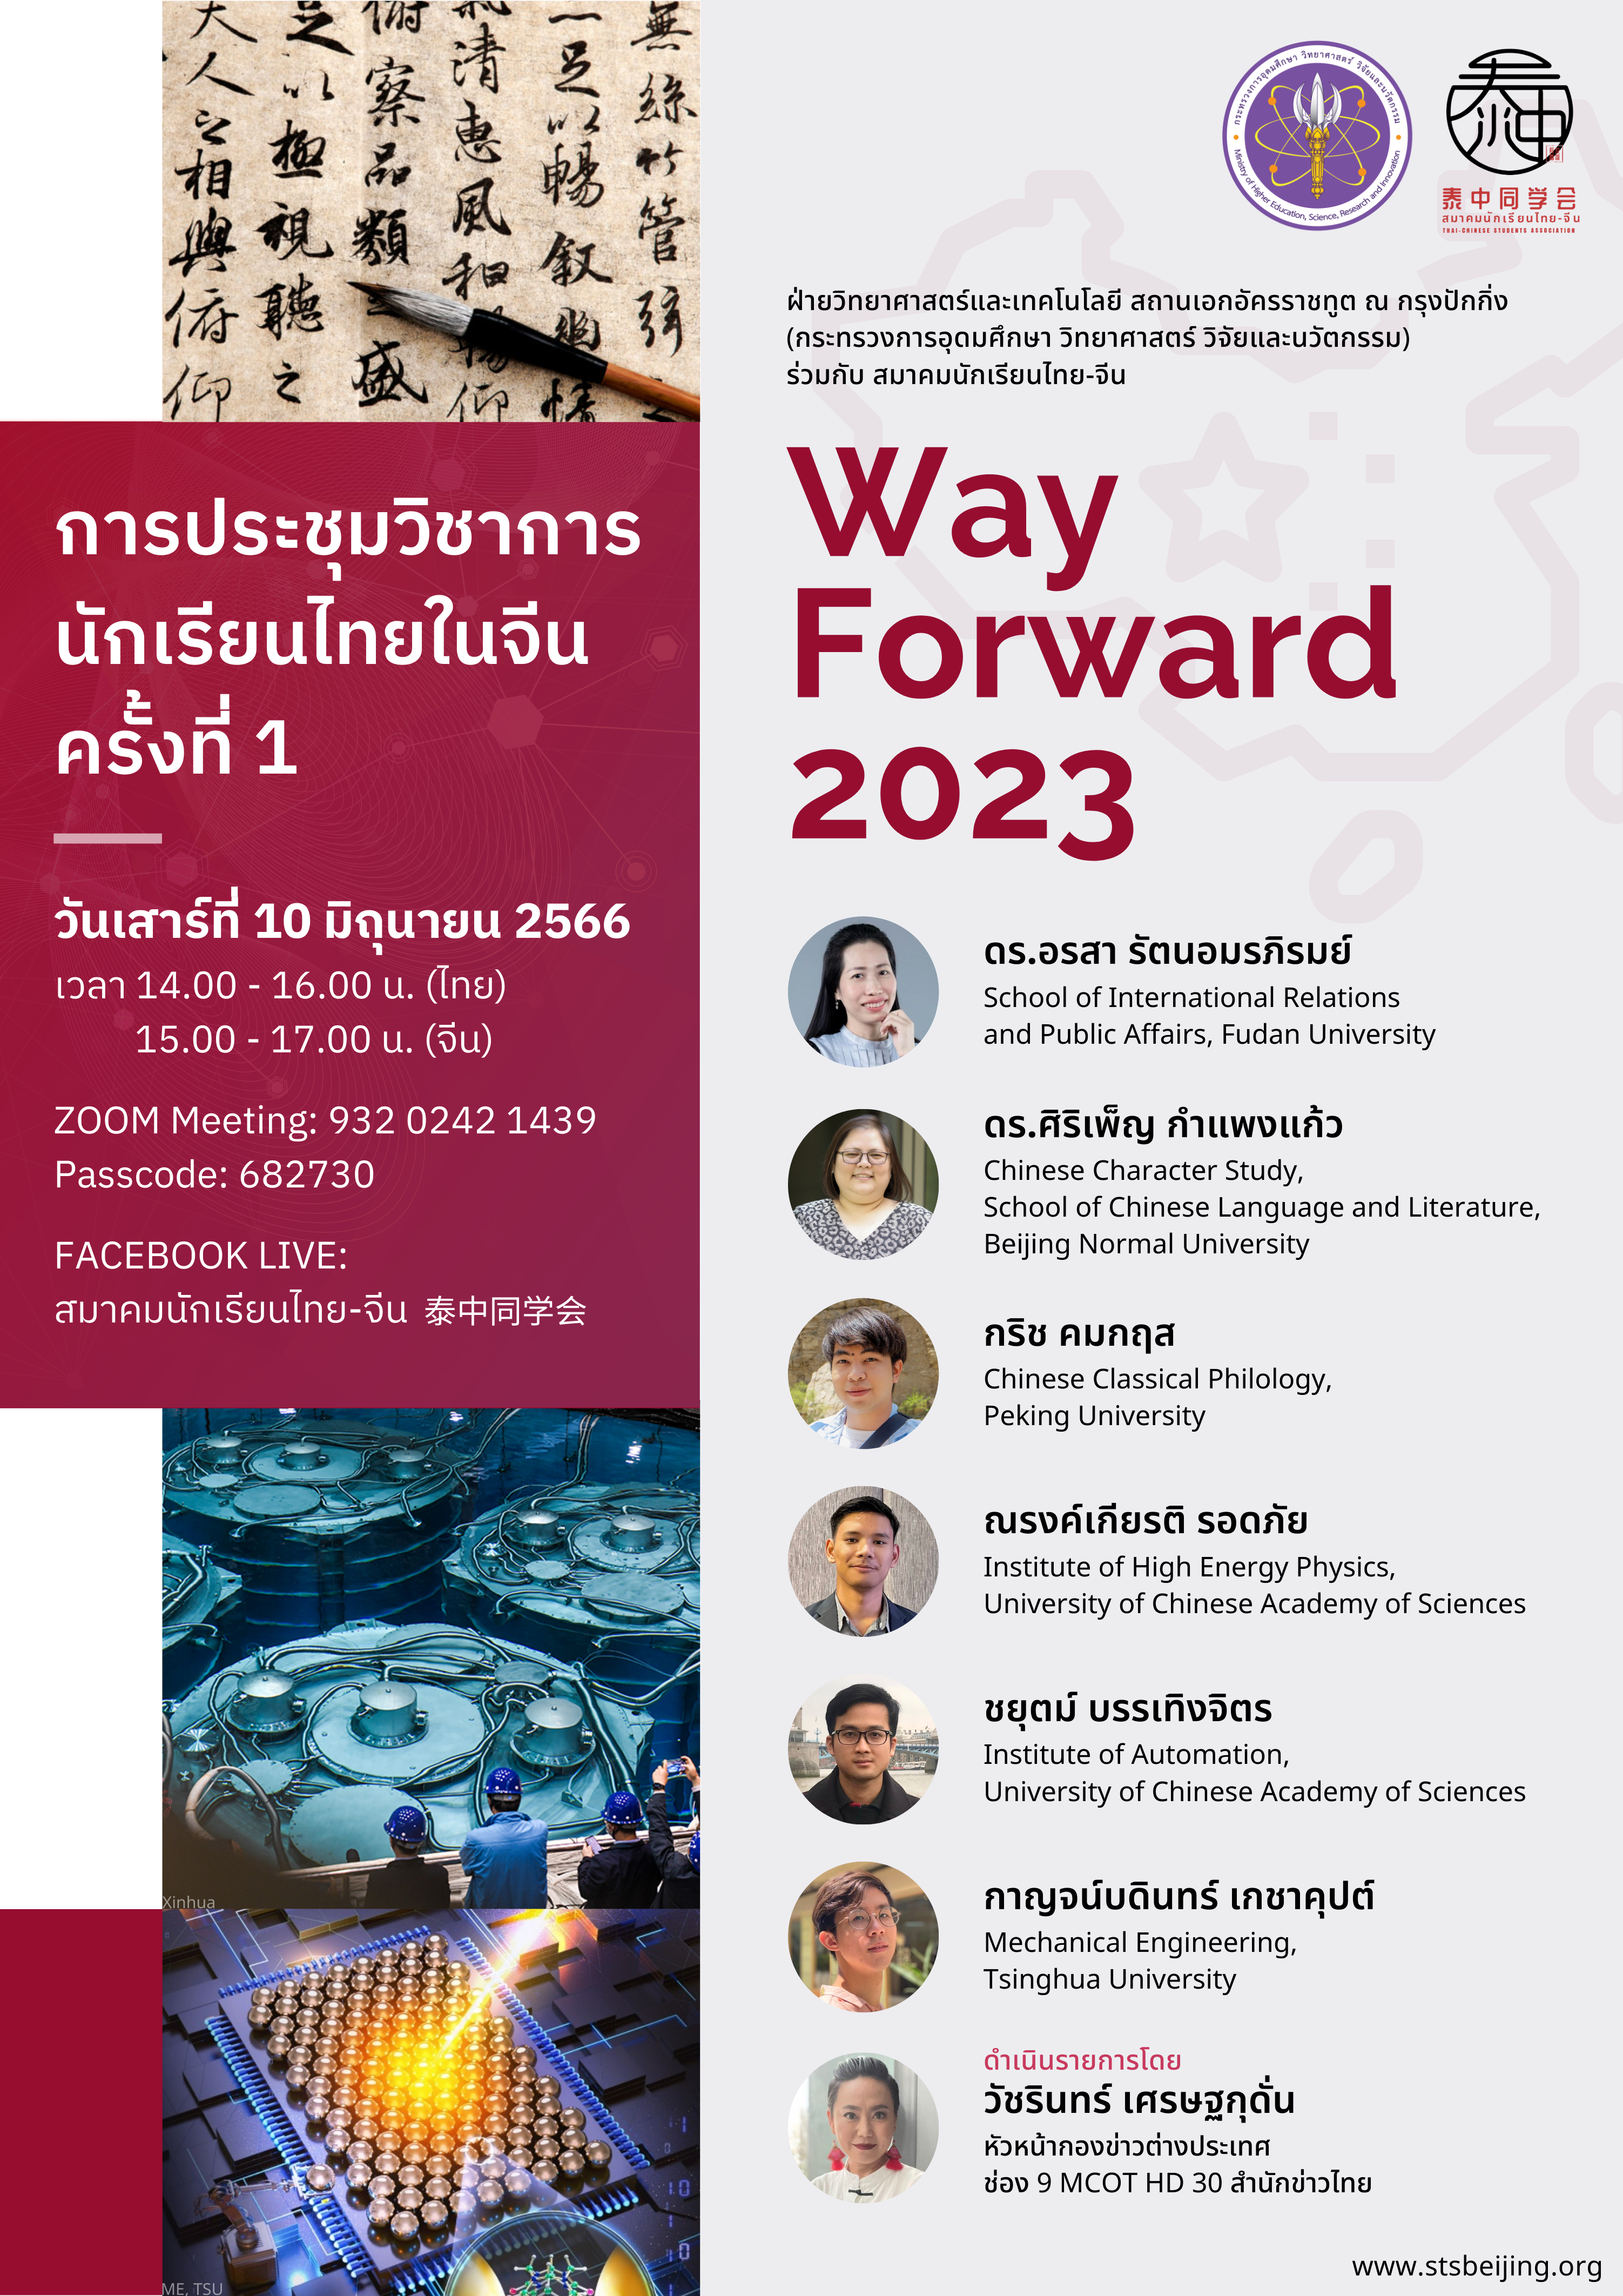 Way Forword 2023 “การประชุมวิชาการนักเรียนไทยในจีน ครั้งที่ 1”